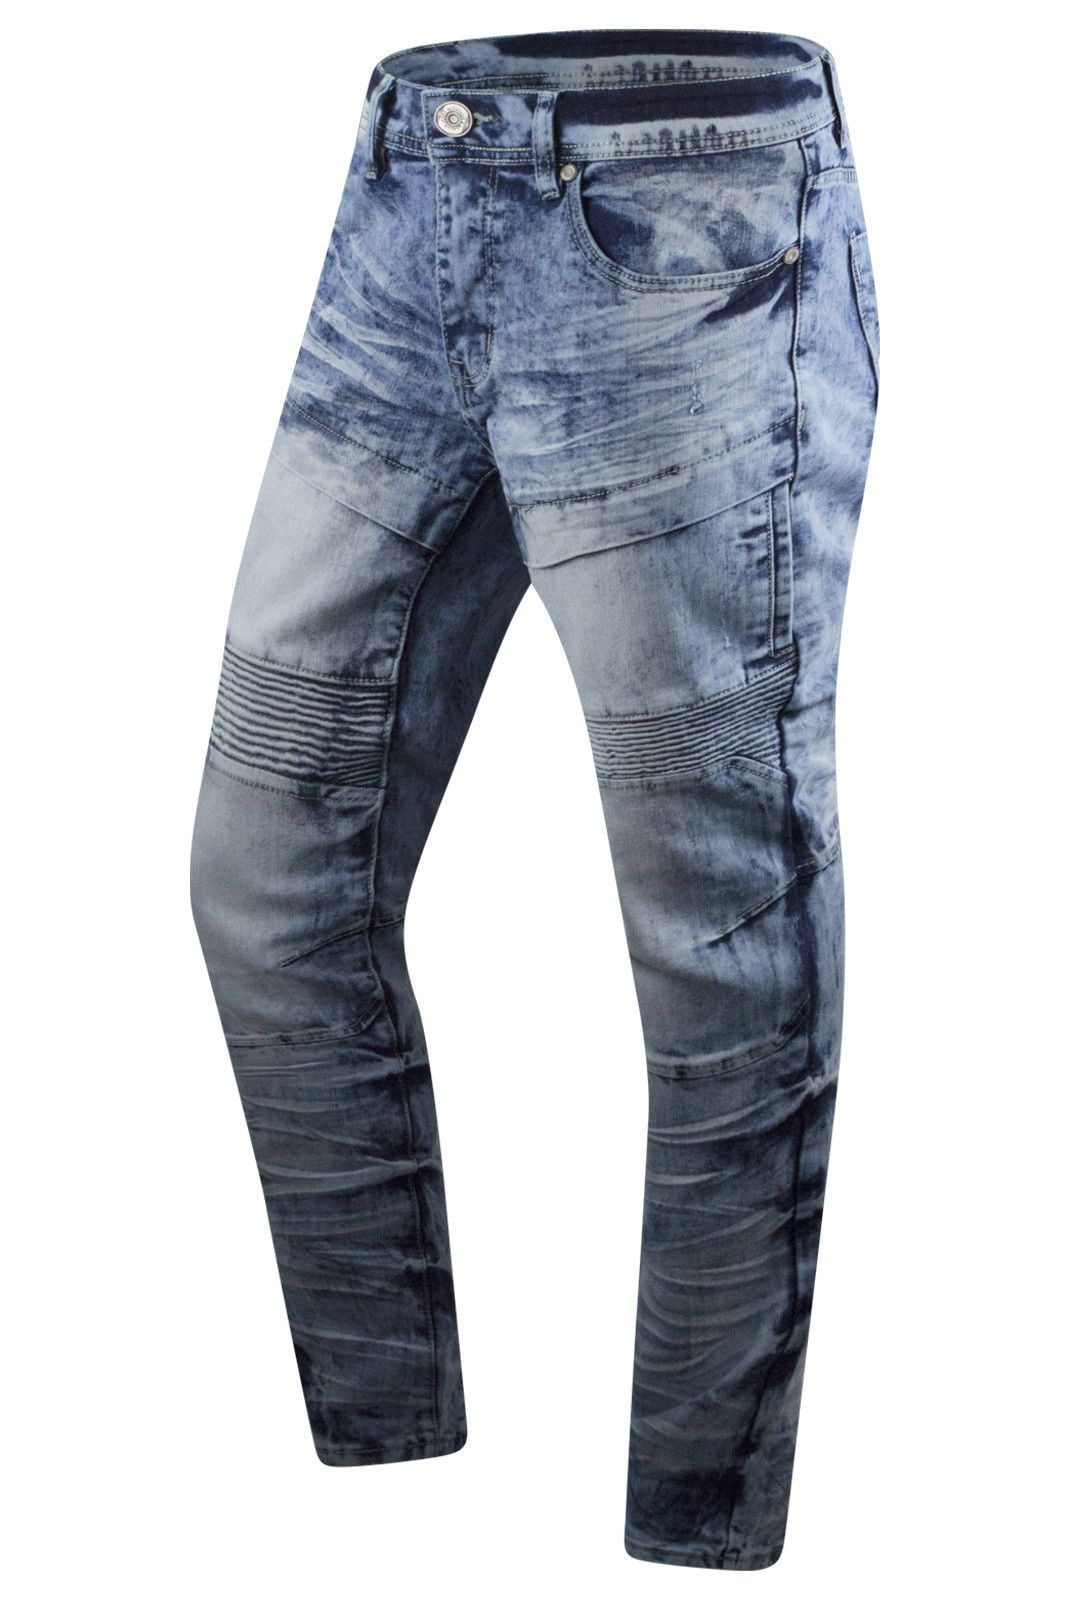 new trending jeans for men